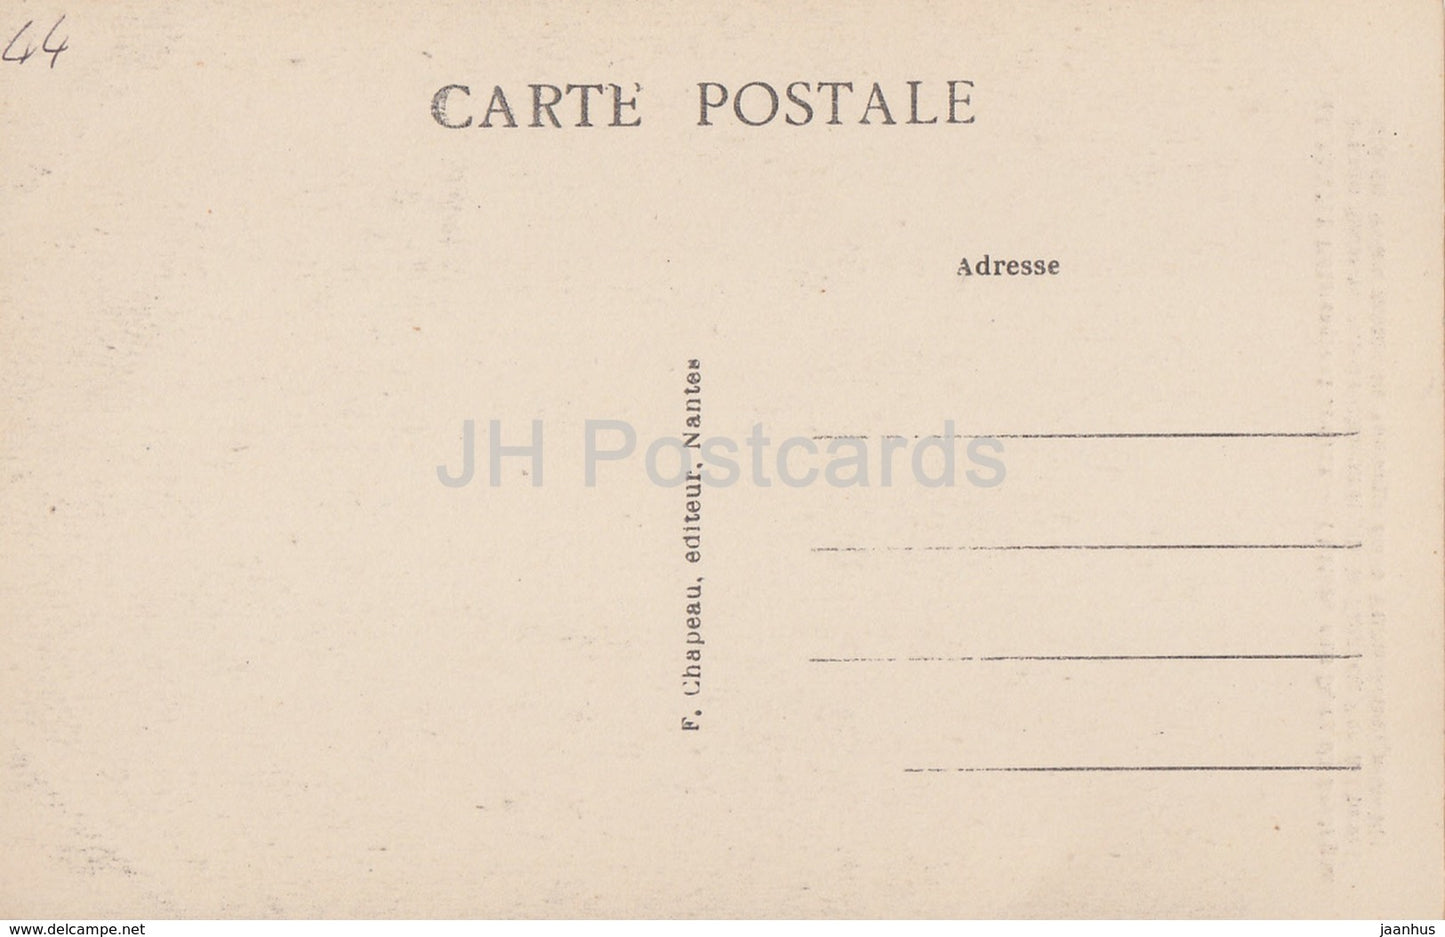 Nantes - Pittoresque et Curieux - Chateau des Ducs de Bretagne - Schloss - 168 - alte Postkarte - Frankreich - unbenutzt